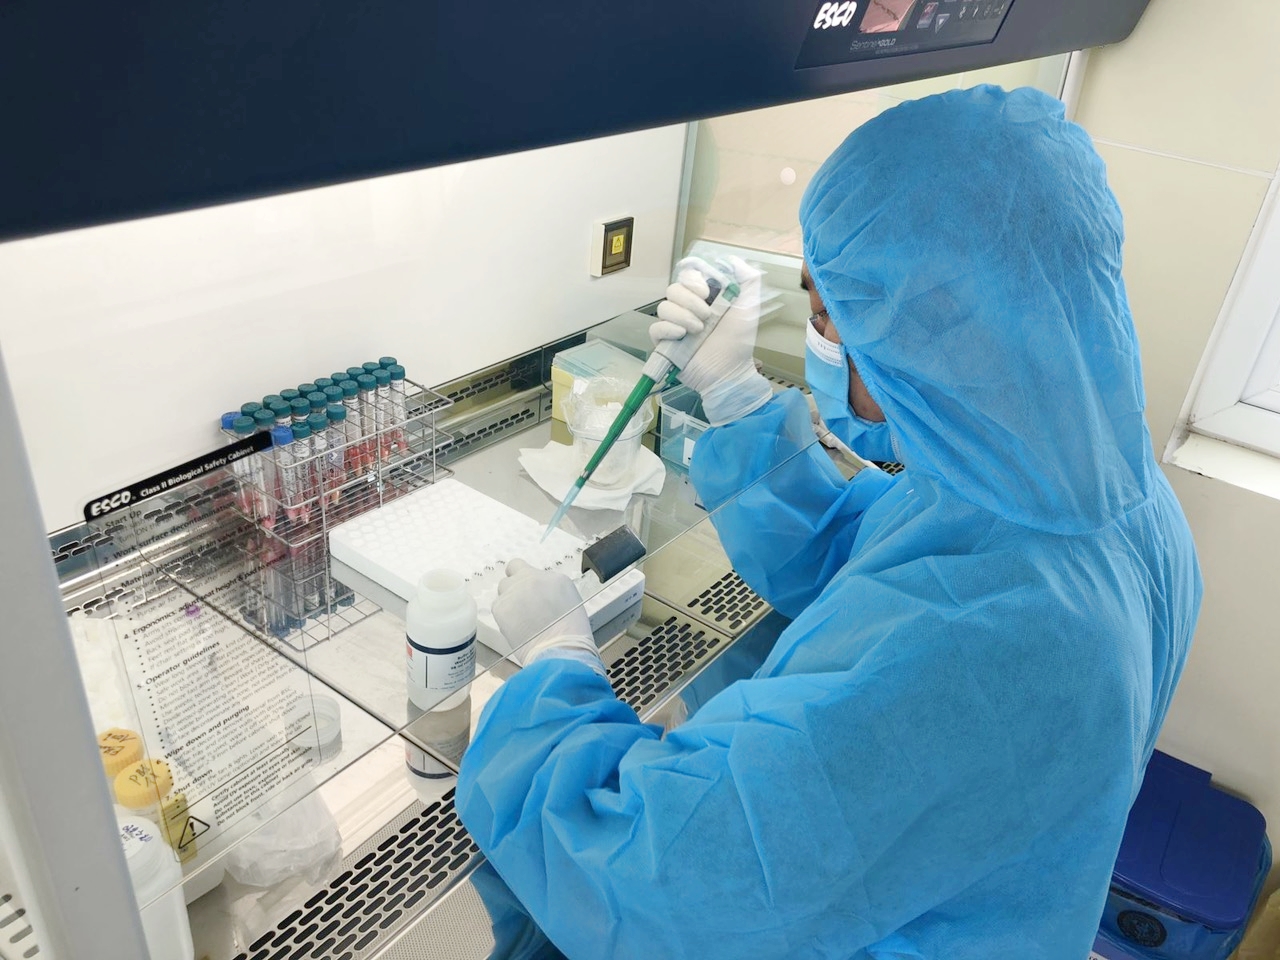 Xét nghiệm virus SARS-CoV-2 tại CDC Quảng Ninh. Các y bác sĩ của CDC Quảng Ninh đã đi đầu và làm chủ kỹ thuật xét nghiệm virus SARS-CoV-2 ngay từ ngày 4/2/2020 và có thể thực hiện 600-900 mẫu xét nghiệm/ngày.